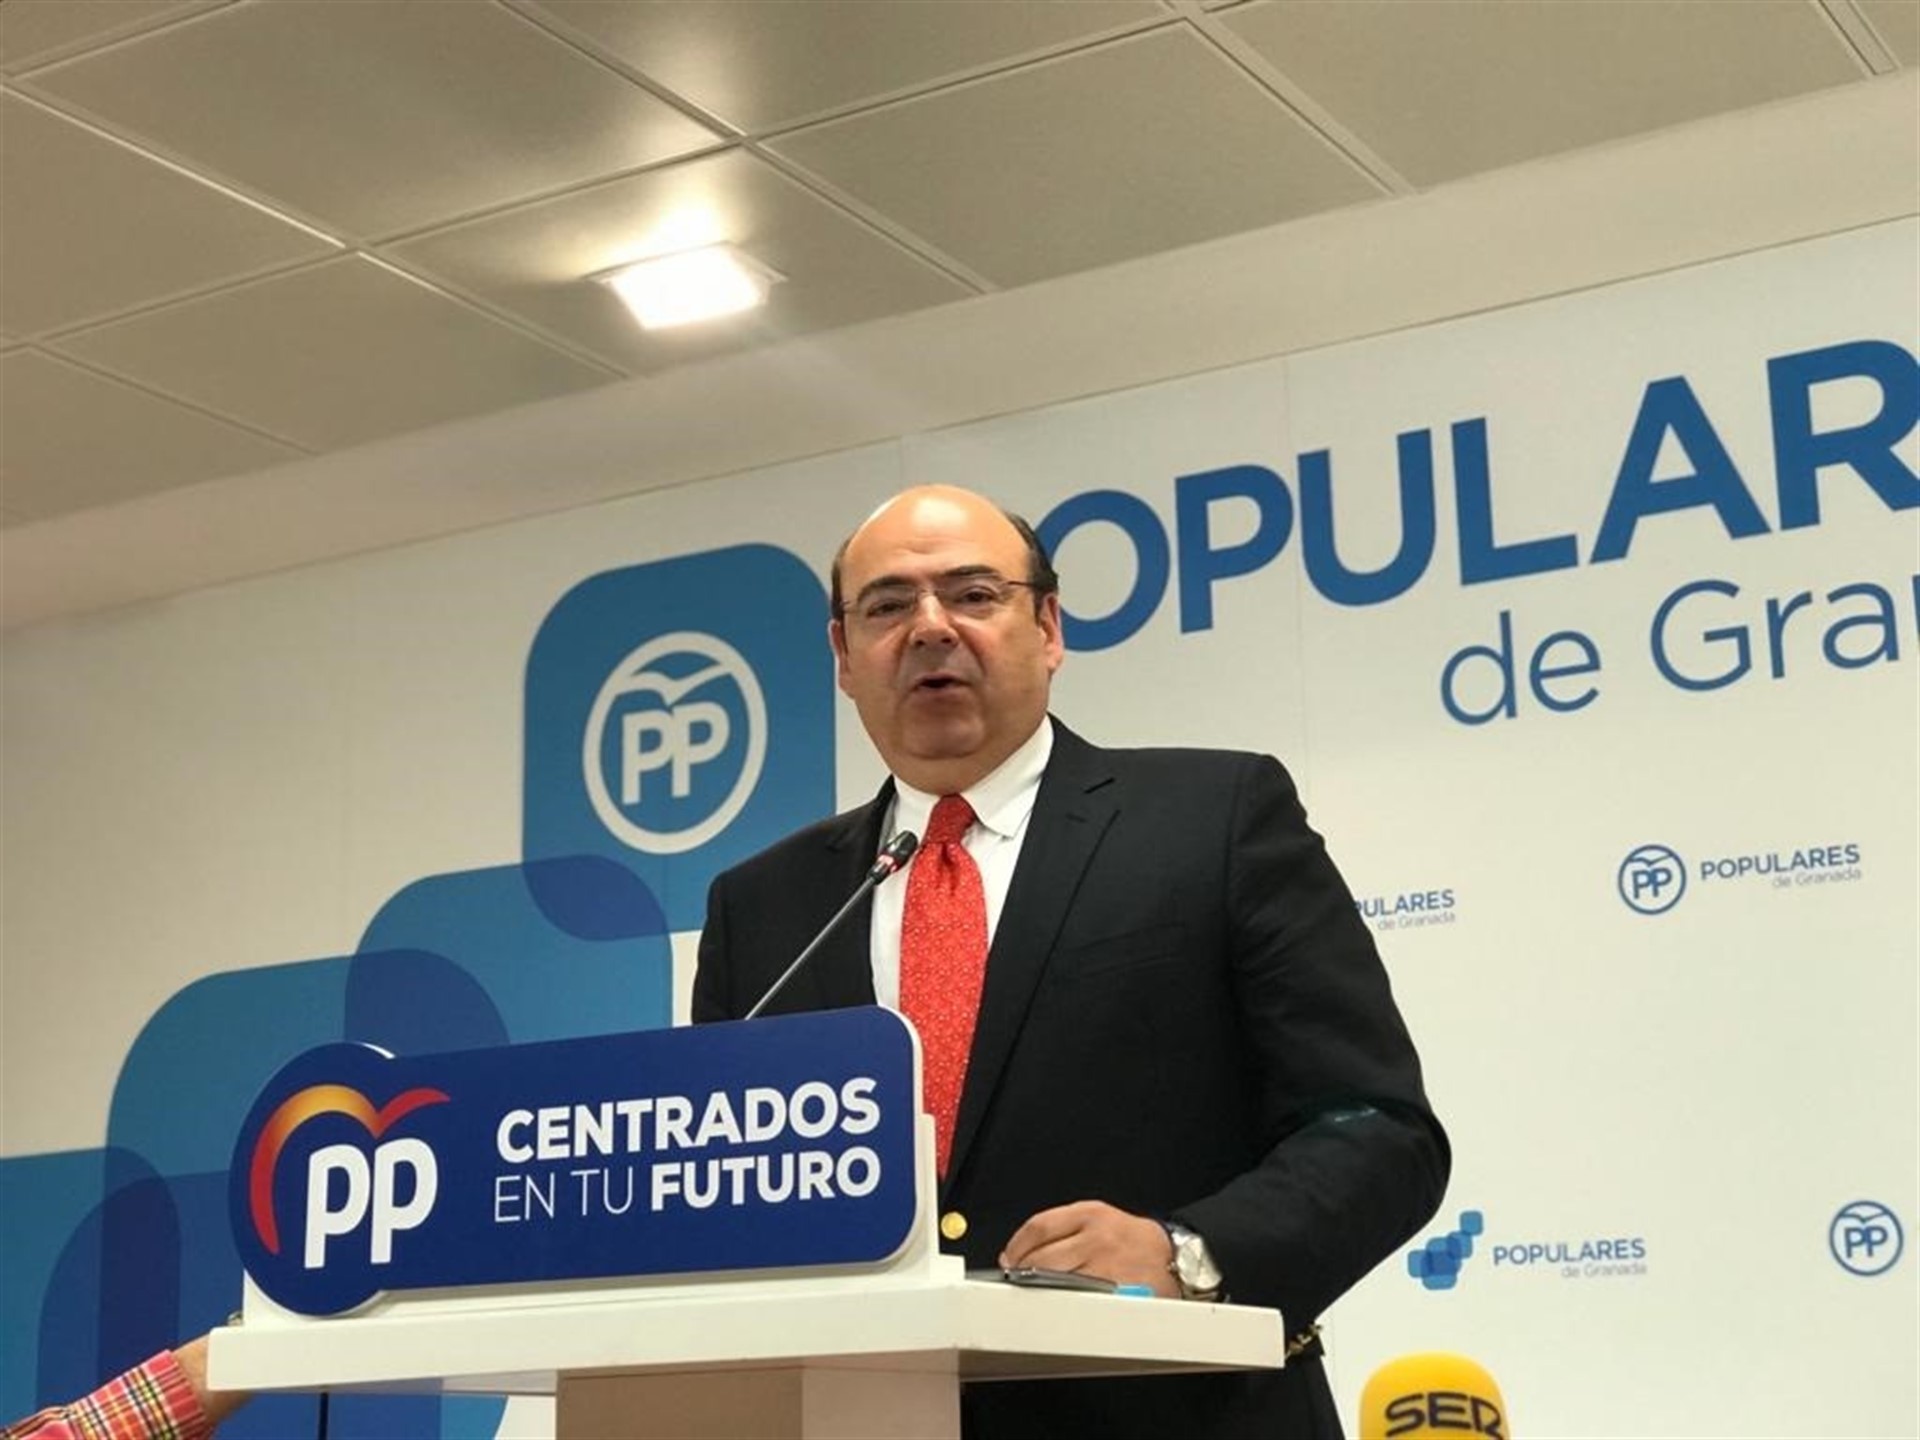 El PP presentará mociones en los ayuntamientos y Diputación en apoyo a Juan Guaidó